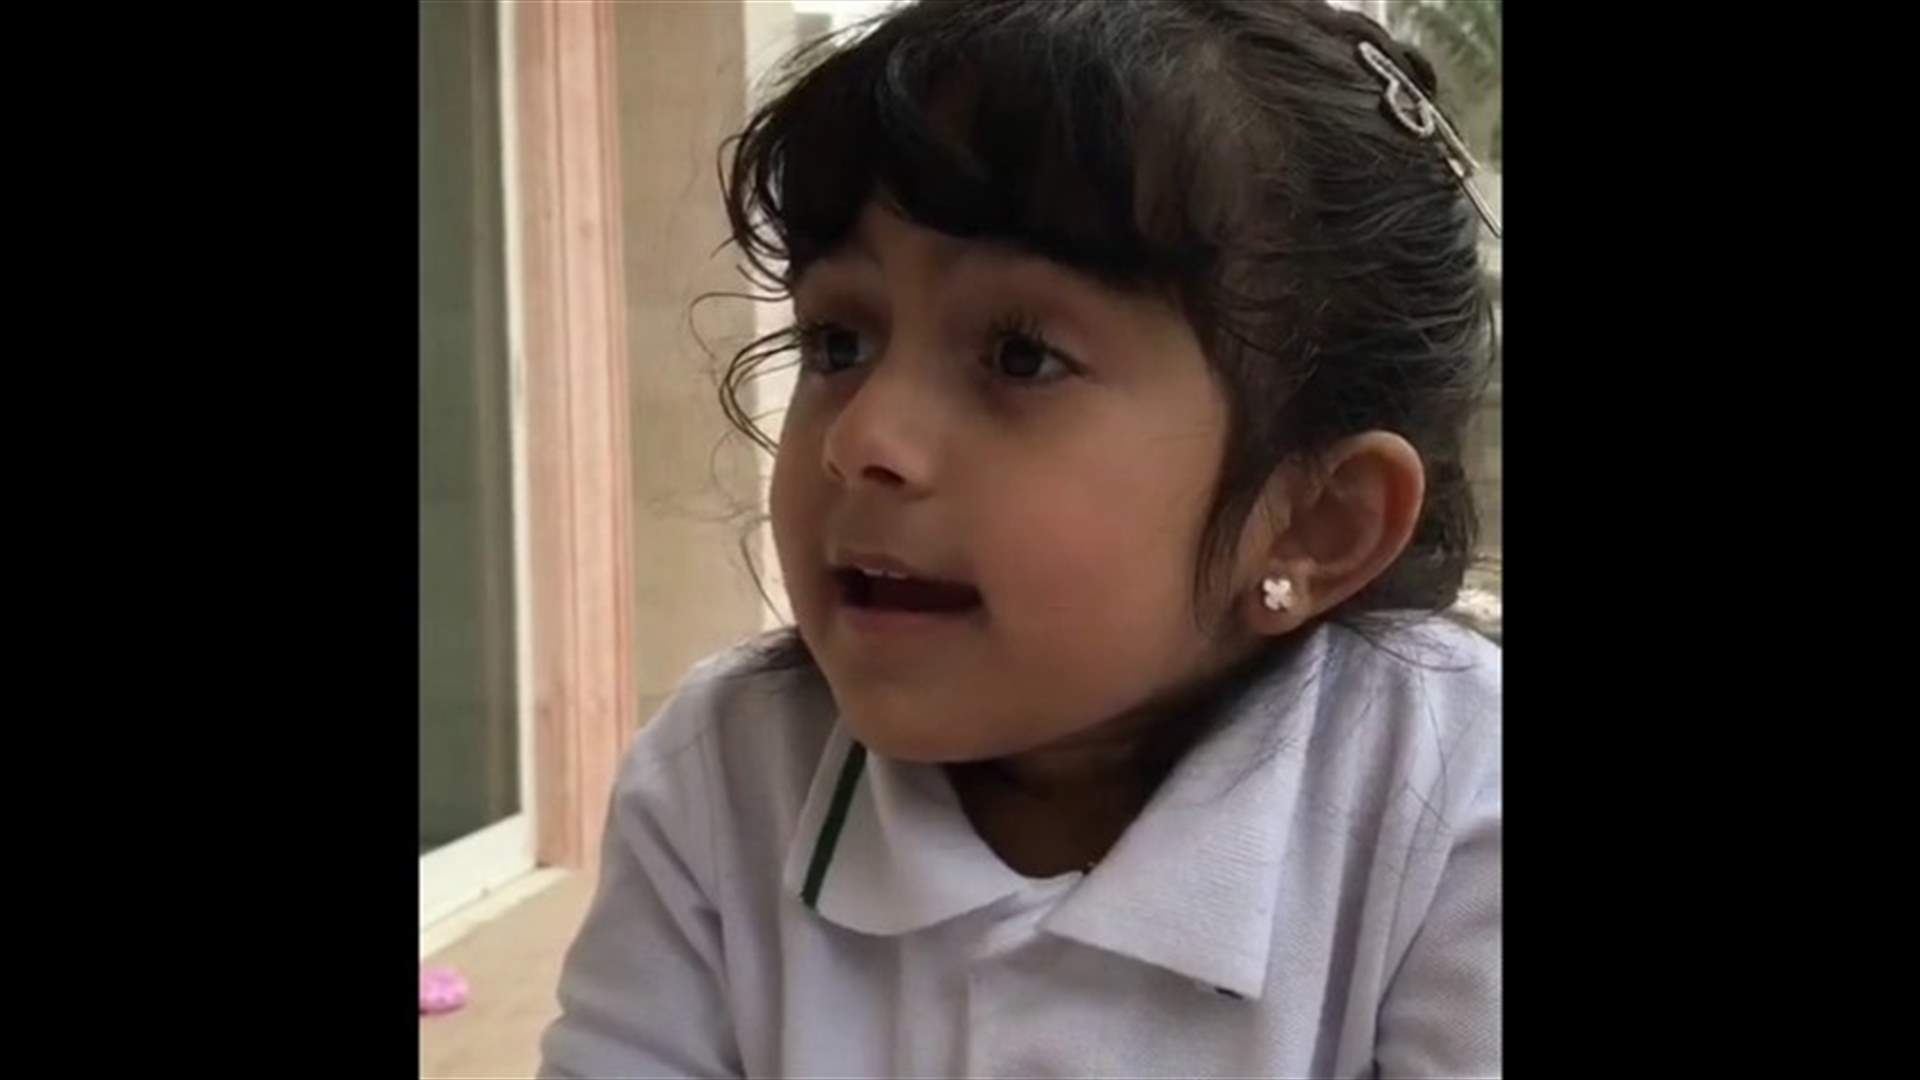 بالفيديو - طفلة تقنع والدها بالزواج على أمها... ماذا قالت له؟